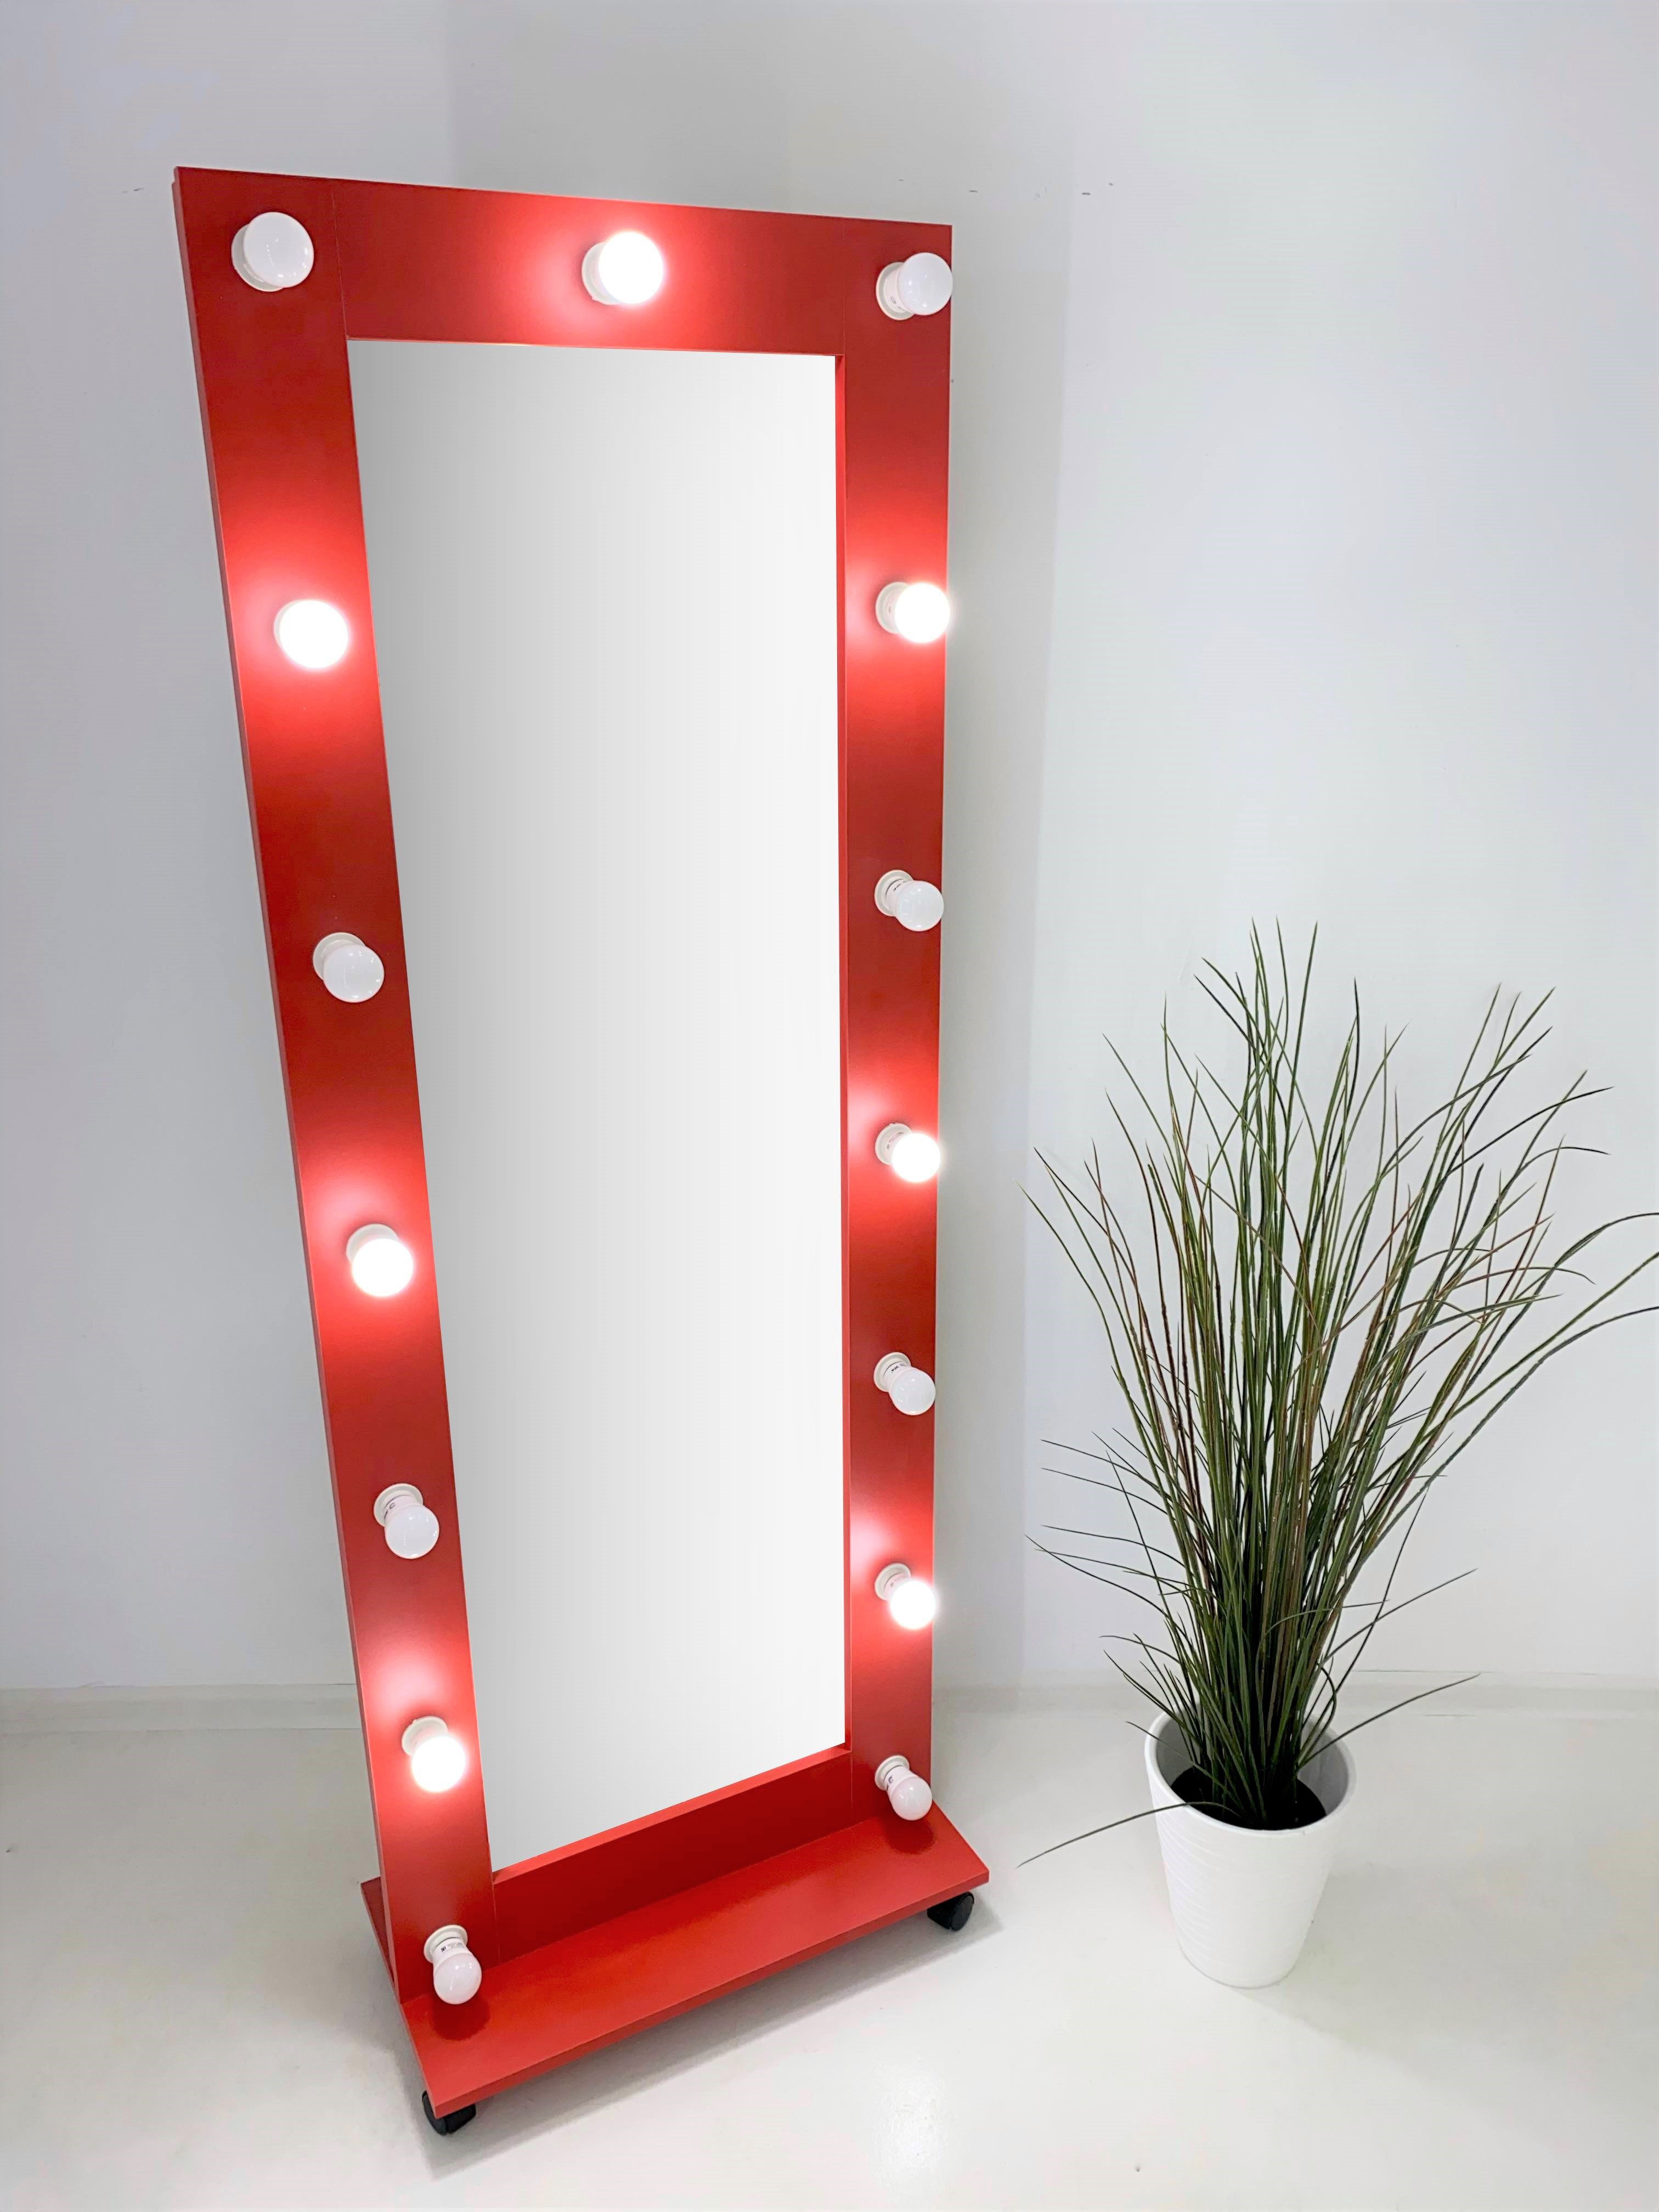 90911033 Гримерное зеркало 167x60 см с лампочками на подставке цвет Красный STLM-0420490 BEAUTYUP